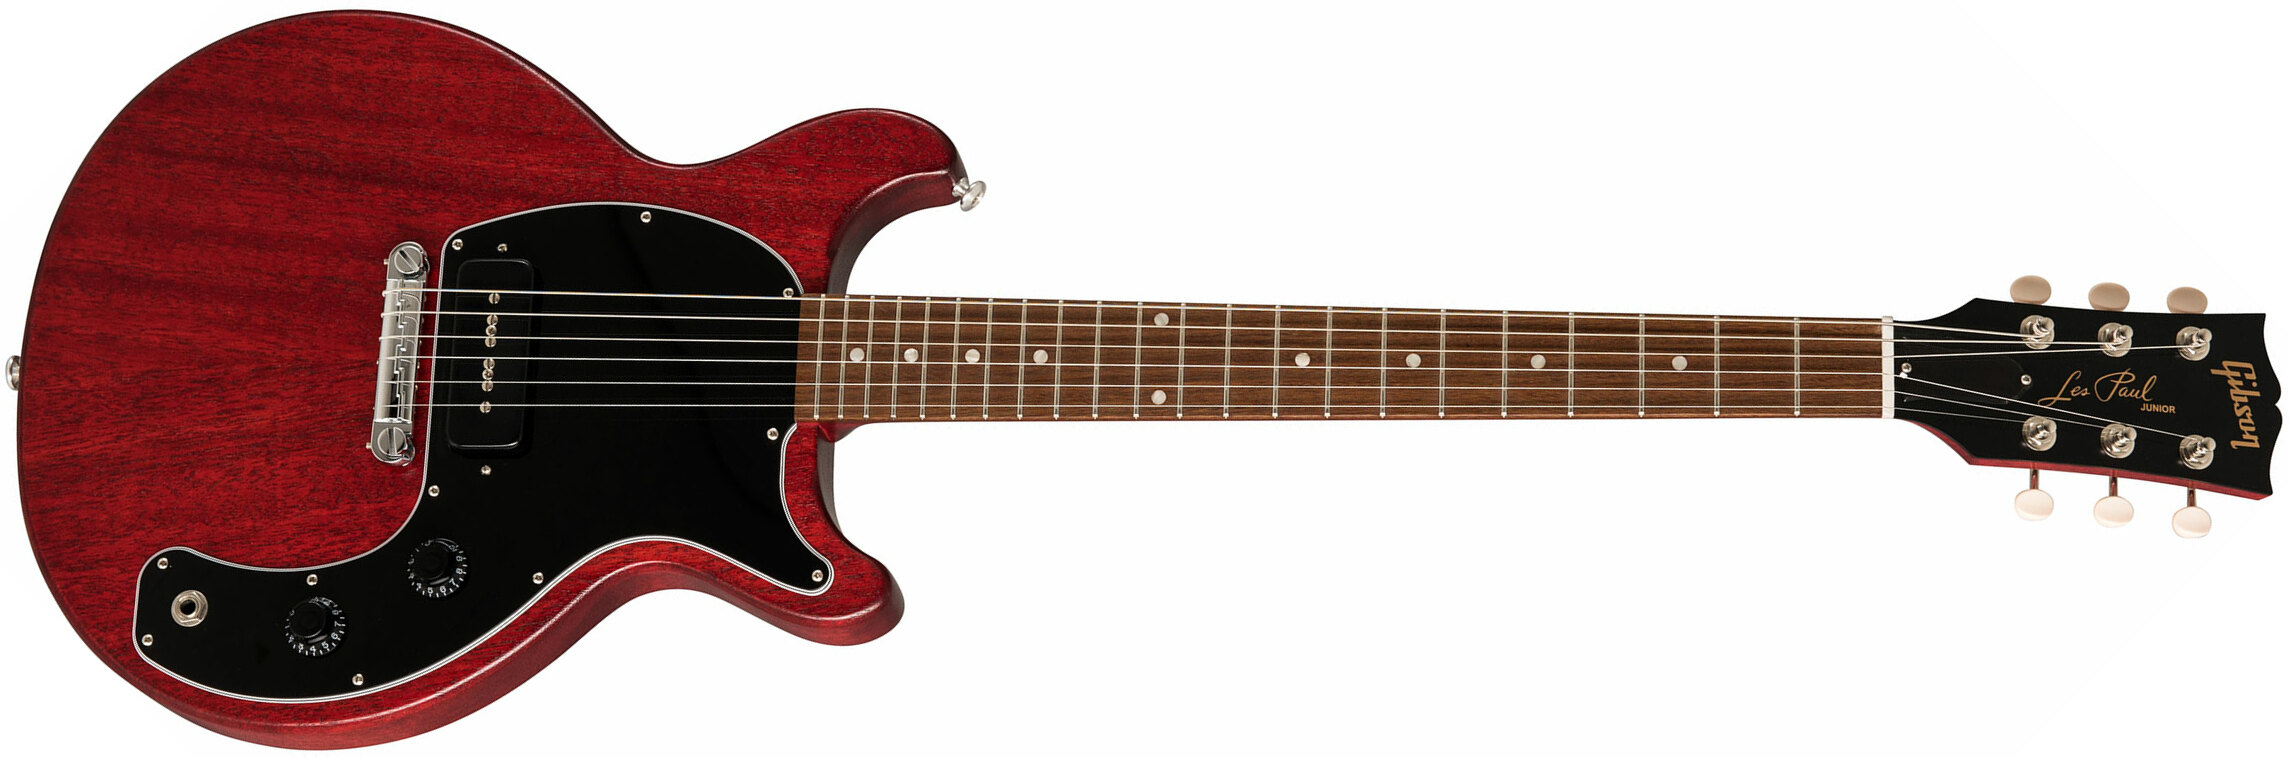 Gibson Les Paul Junior Tribute 2019 P90 Ht Rw - Worn Cherry - Enkel gesneden elektrische gitaar - Main picture